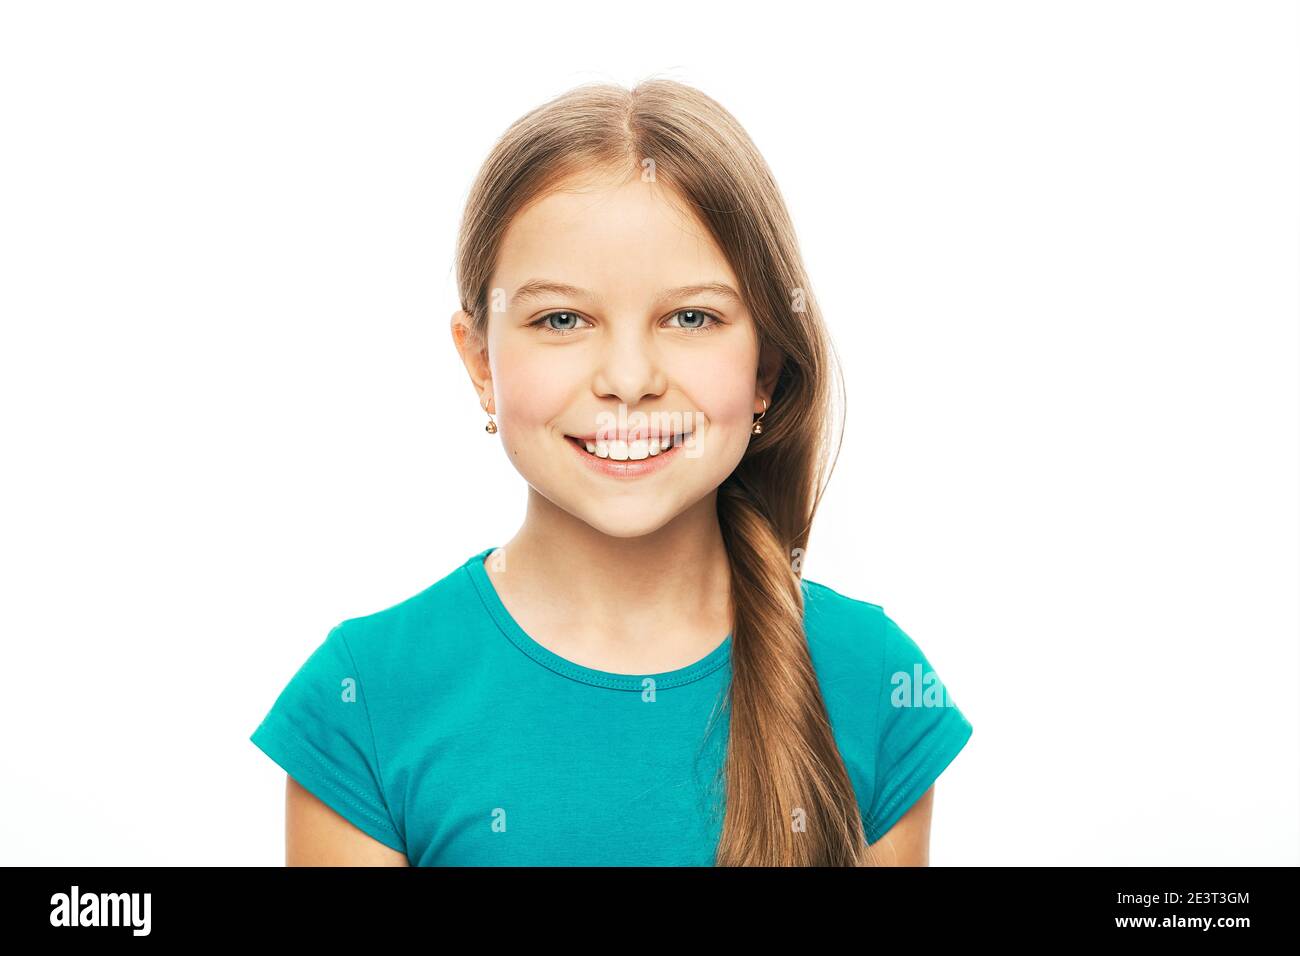 Retrato de una hermosa chica caucásica con una sonrisa blanca y saludable, aislada sobre fondo blanco. La sonrisa del niño Foto de stock